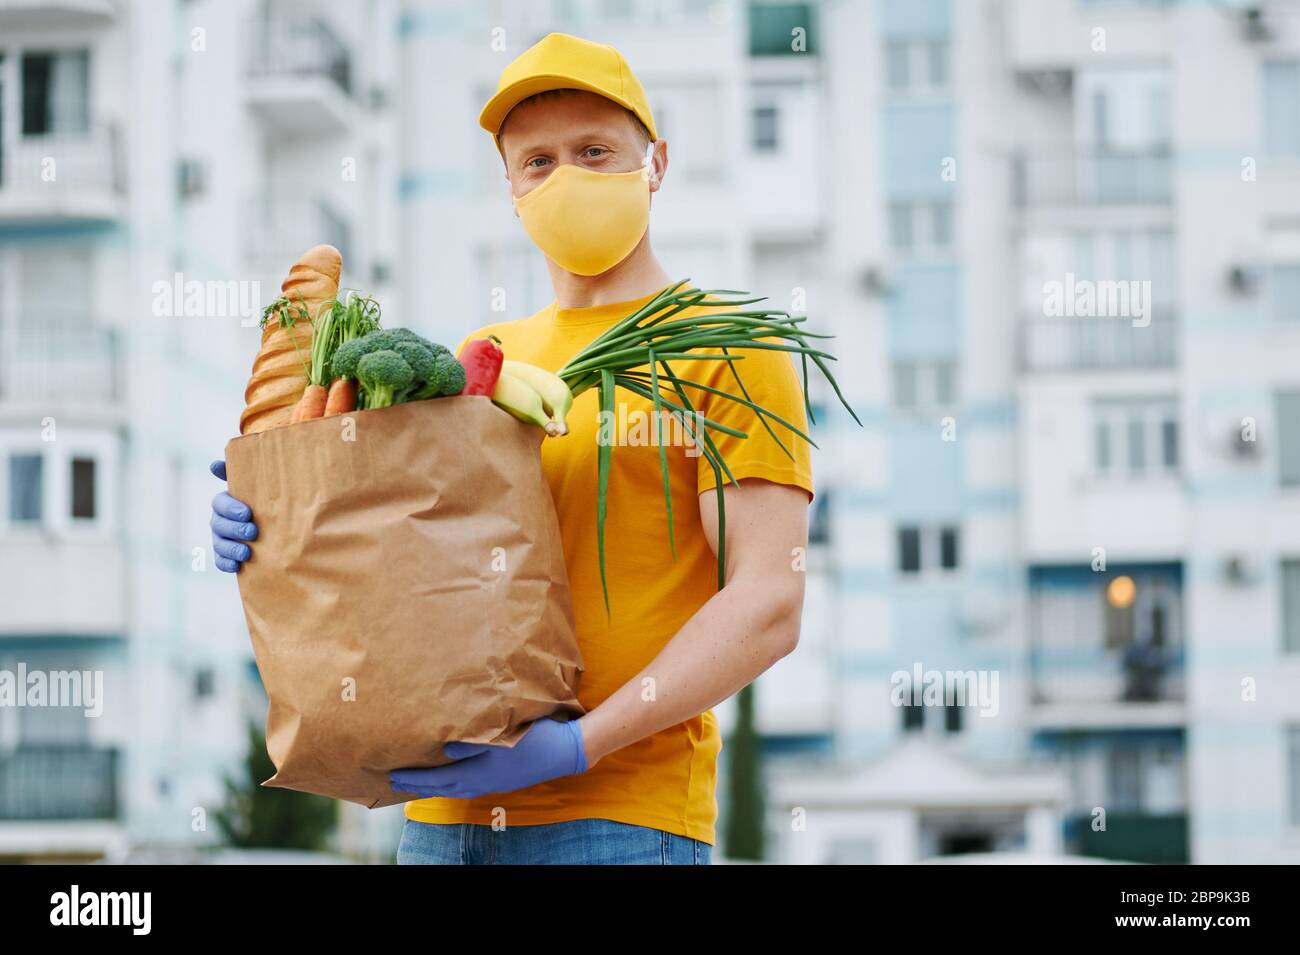 Livraison d'épicerie un homme en casquette jaune uniforme, t-shirt, masque,  gants tient un sac en papier avec des aliments, des fruits, des légumes sur  toile de fond de construction. Quarantaine Photo Stock -